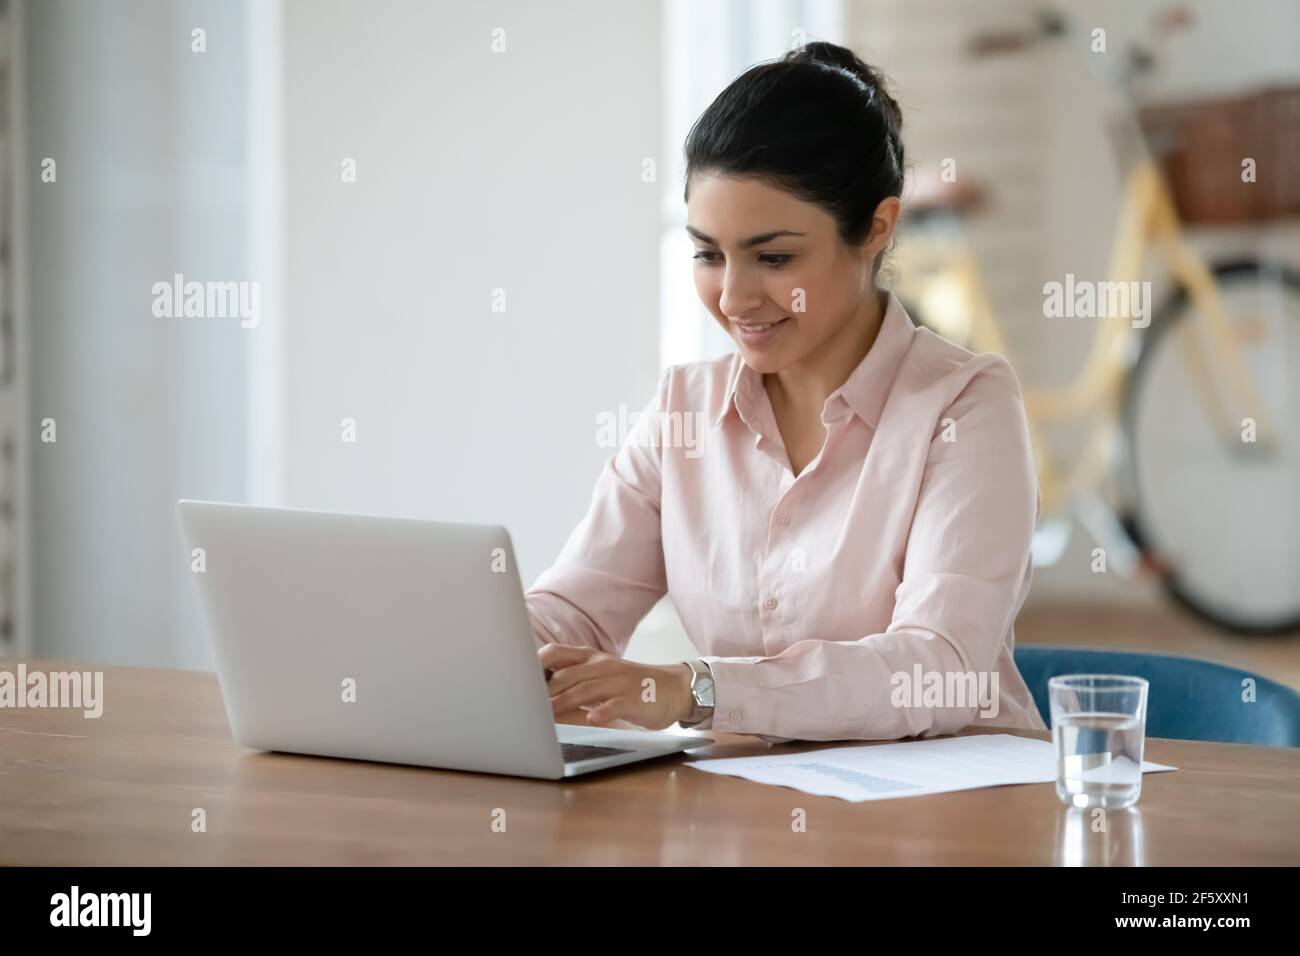 Une femme indienne souriante travaille sur un ordinateur portable Banque D'Images